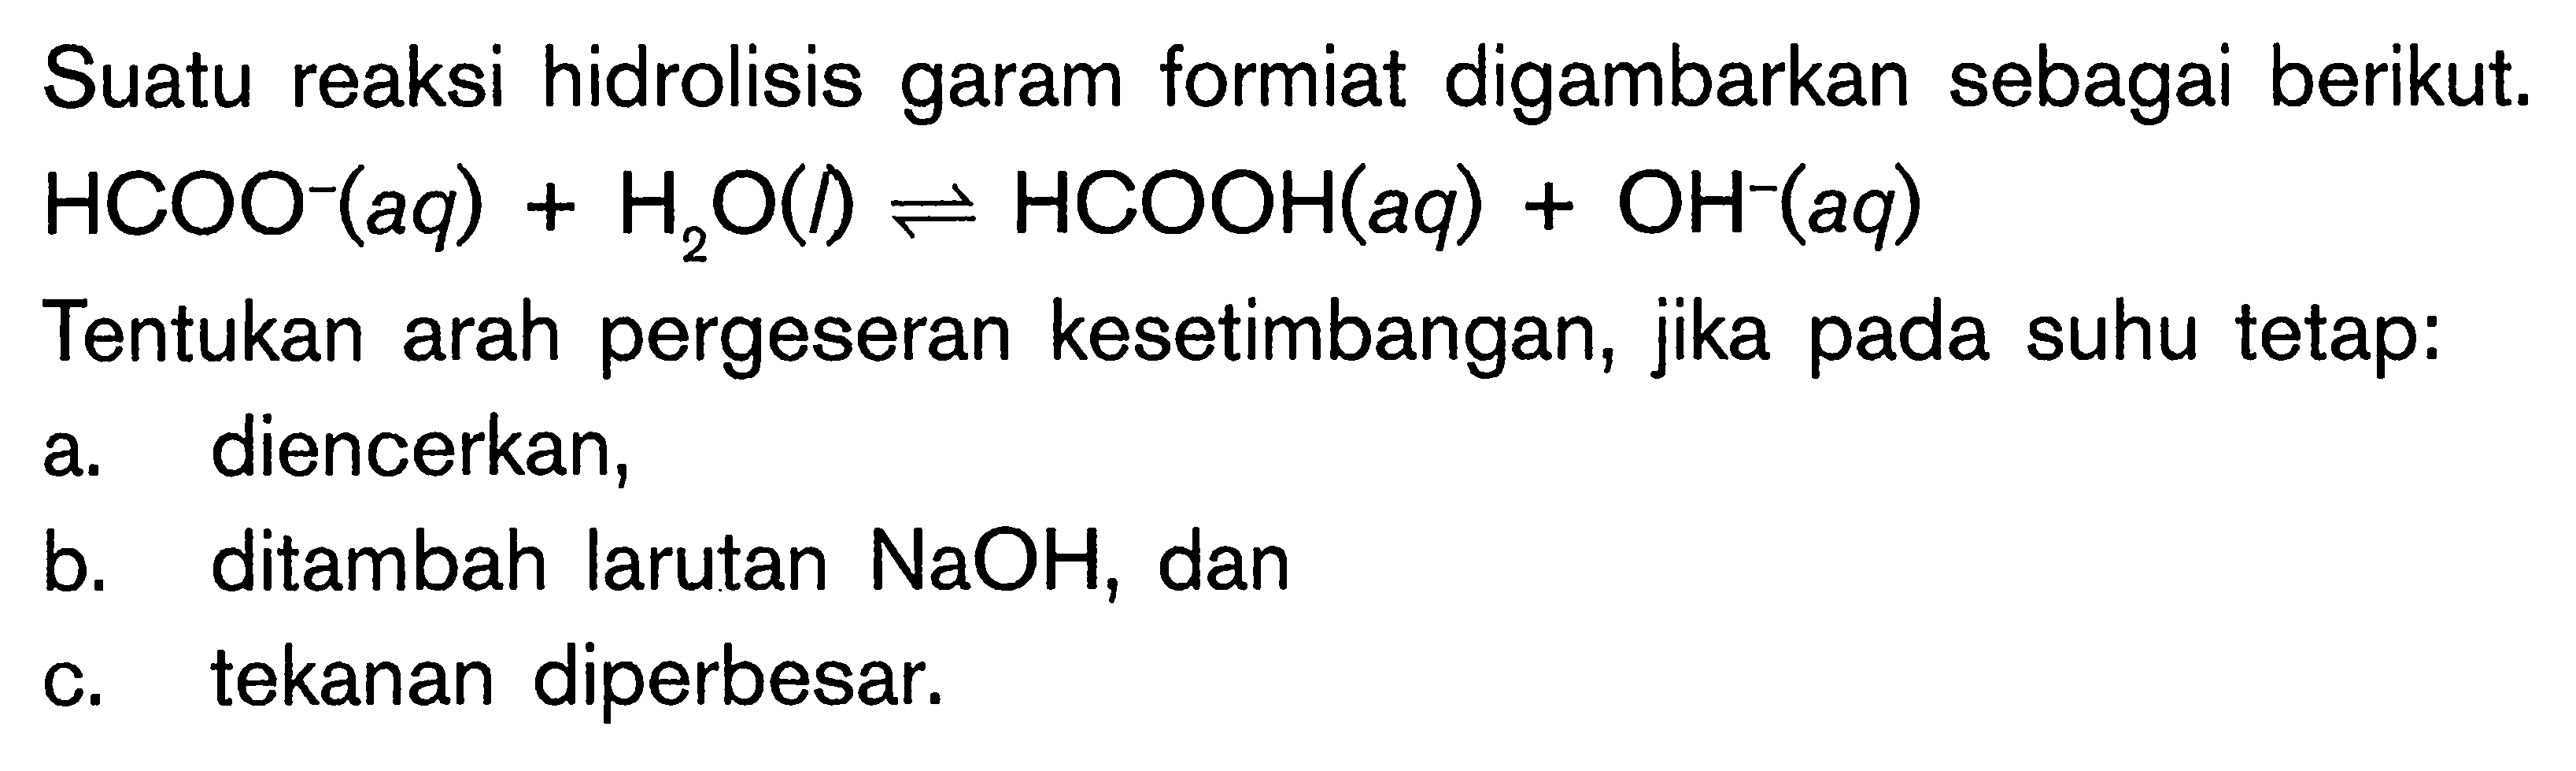 Suatu reaksi hidrolisis garam formiat digambarkan sebagai berikut. HCOO^- (aq) + H2O (l) <=> HCOOH (aq) + OH-^ (aq) Tentukan arah pergeseran kesetimbangan, jika pada suhu tetap: a. diencerkan, b. ditambah larutan NaOH, dan c. tekanan diperbesar.